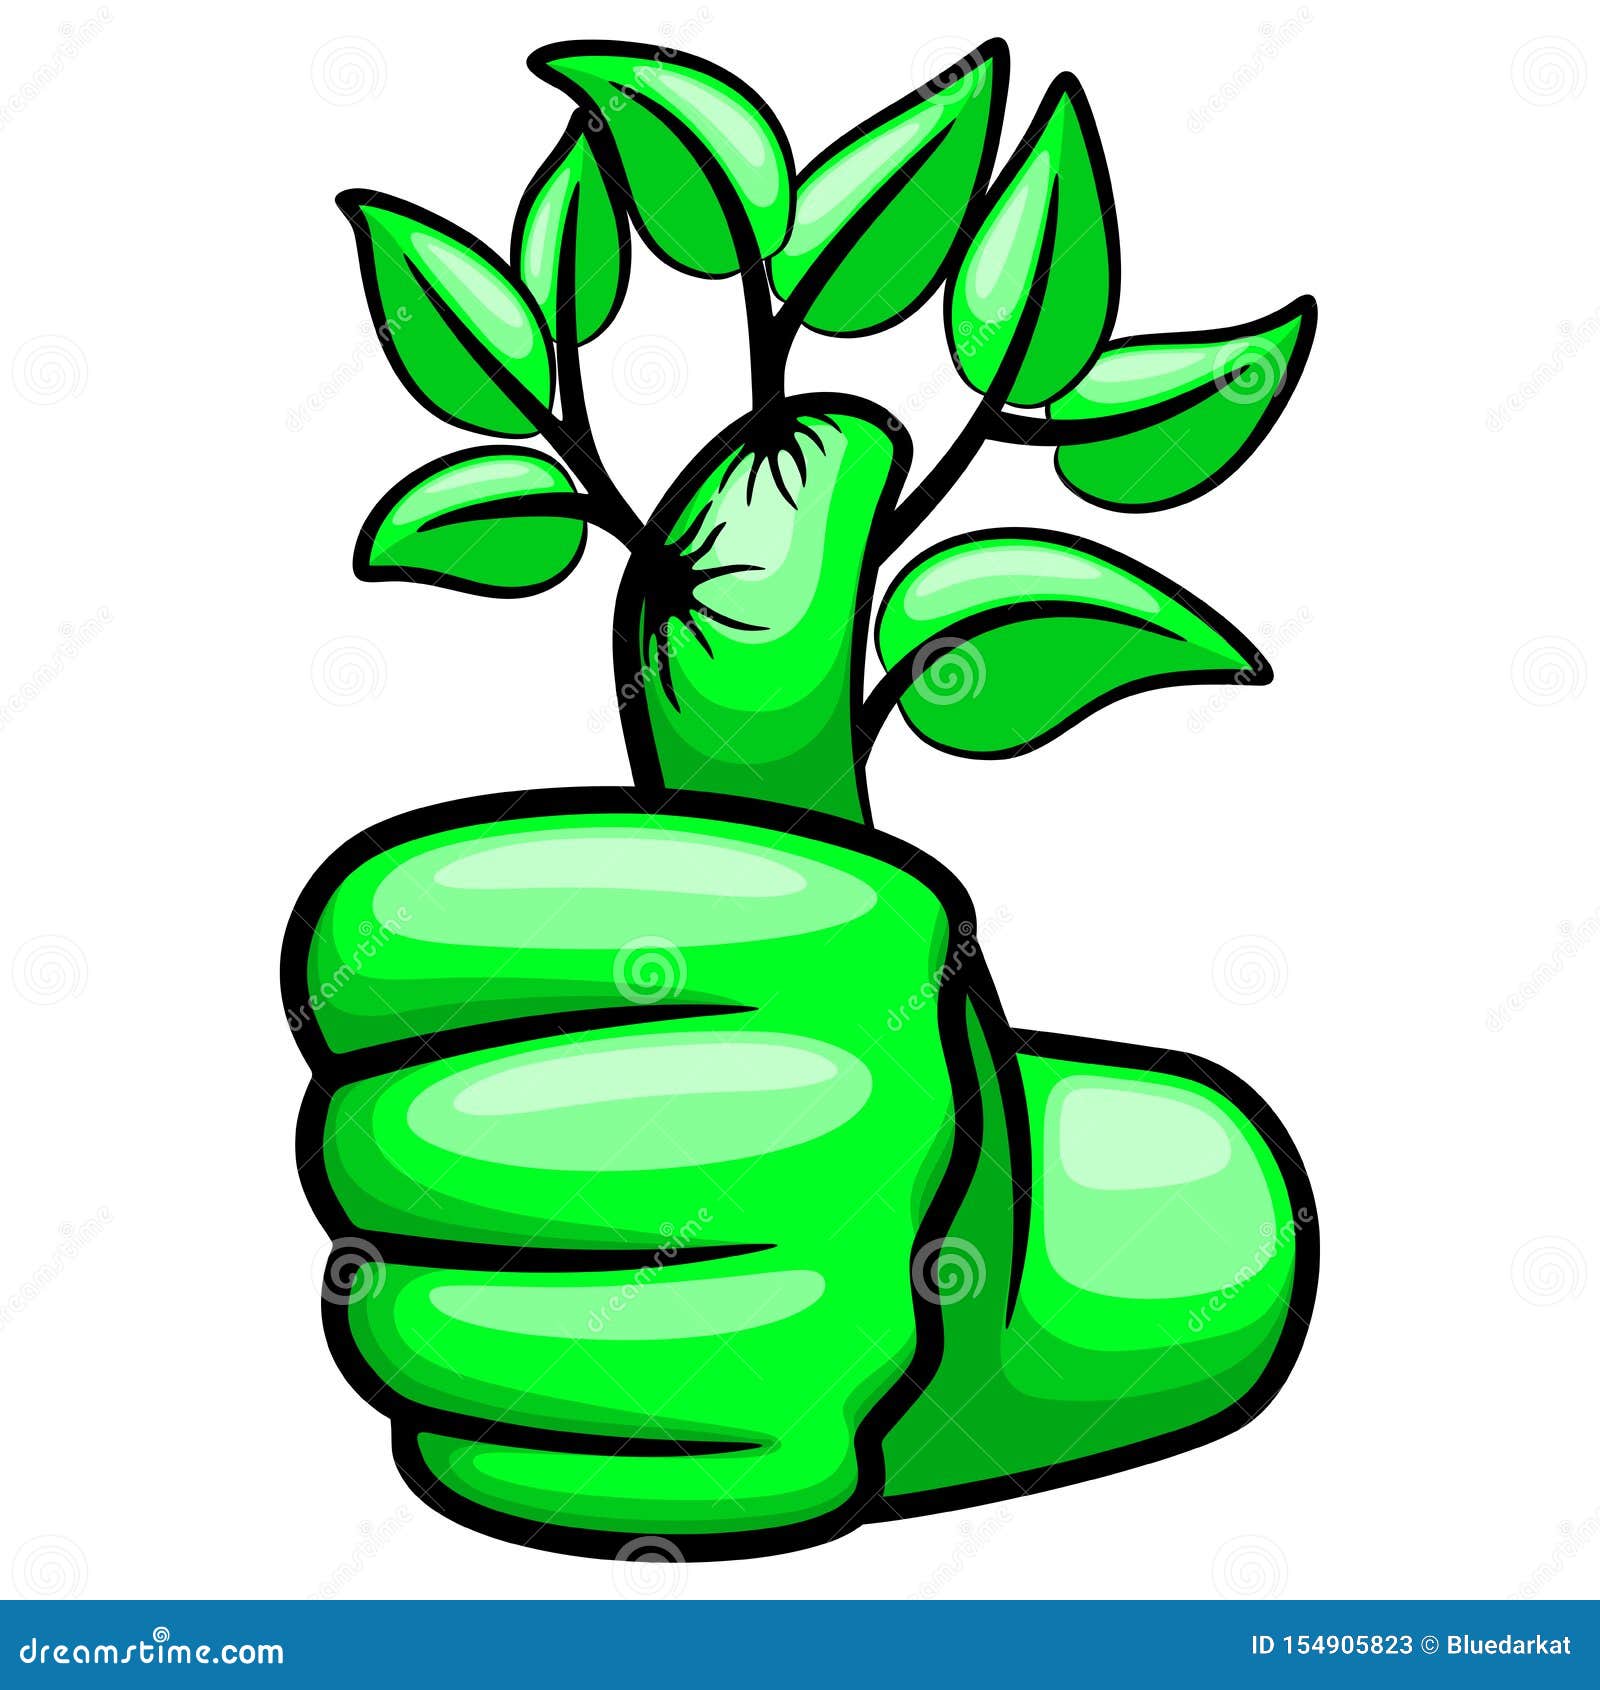 Cartoon green thumb